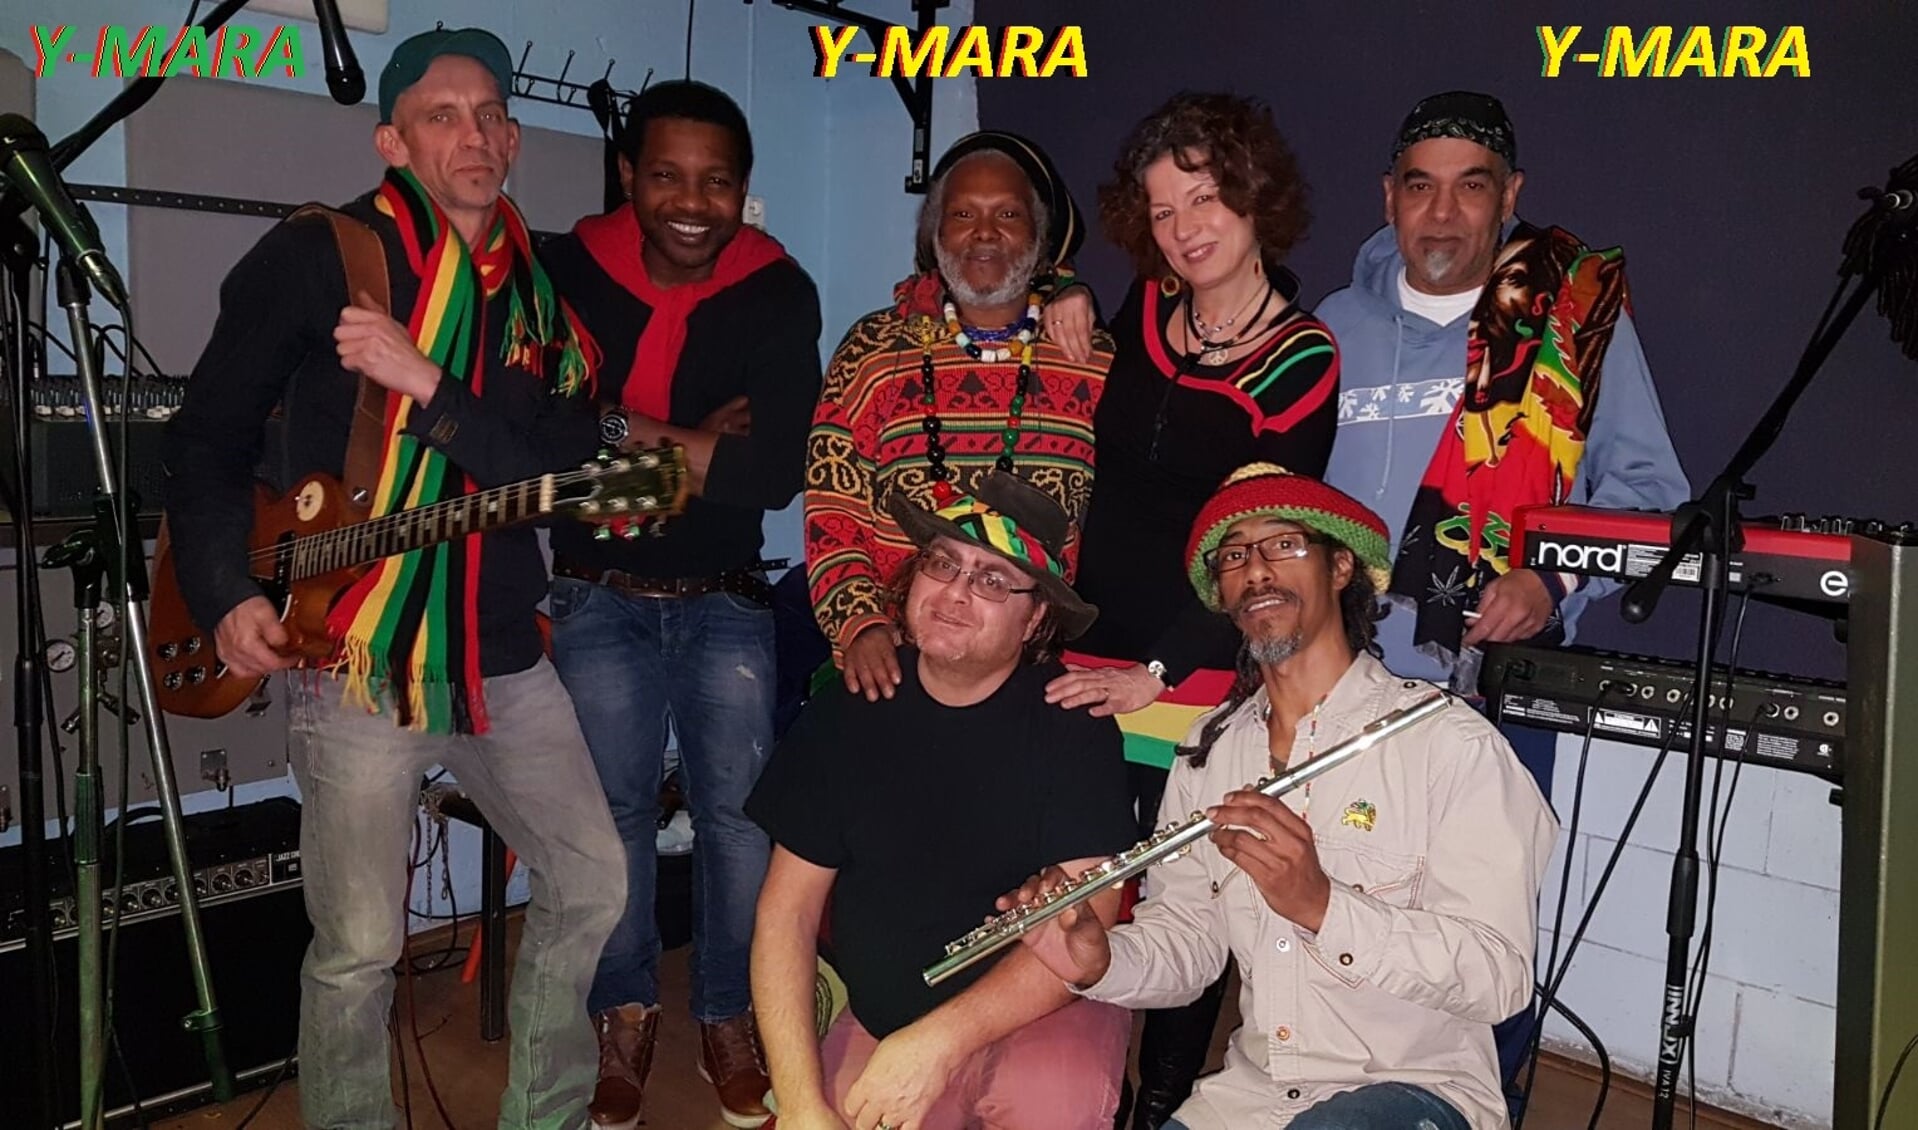 Reggaeband Y-Mara treedt zaterdag op bij STECK